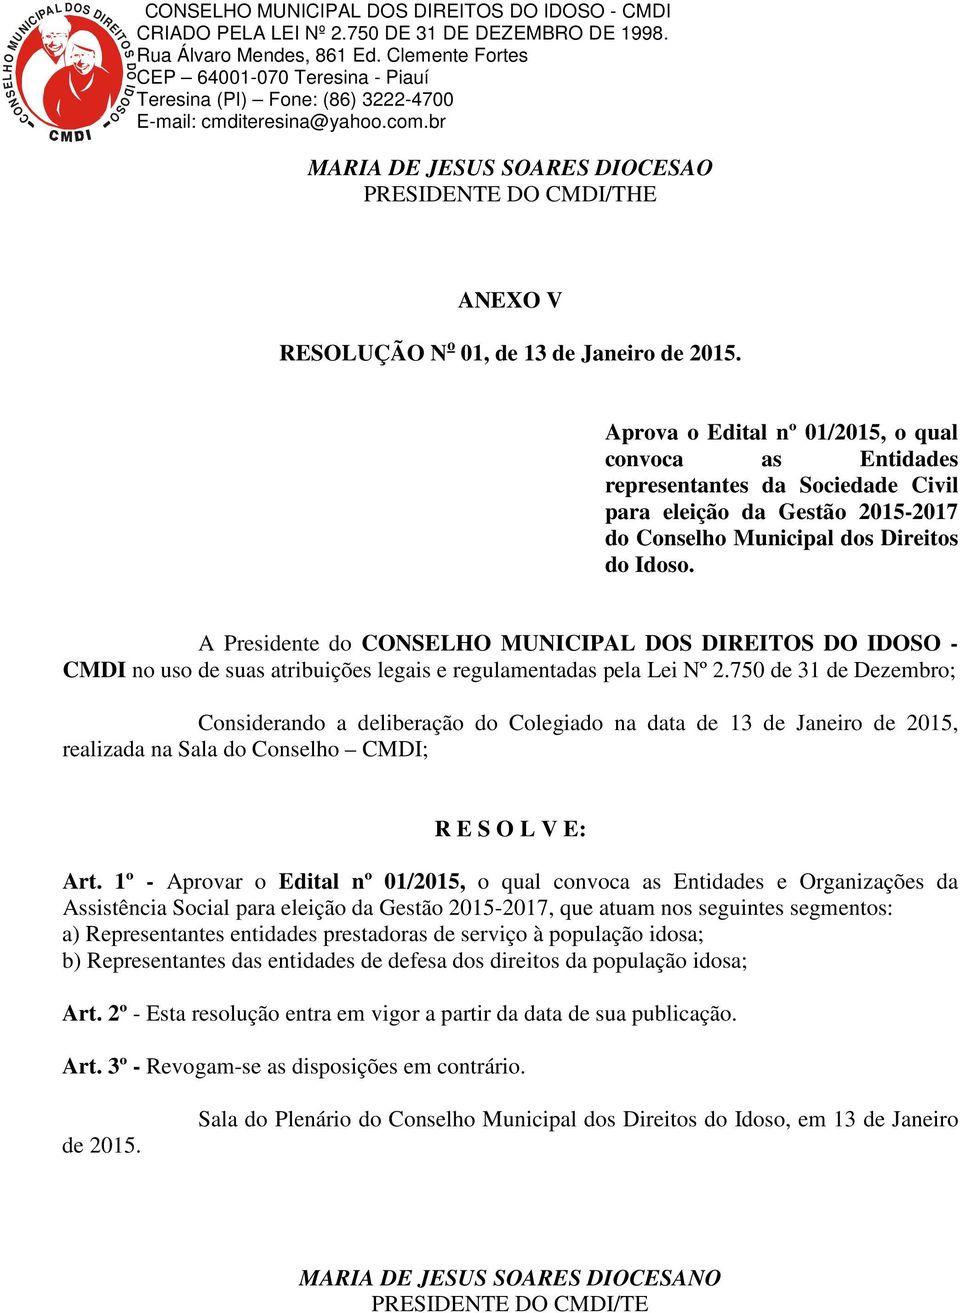 A Presidente do CONSELHO MUNICIPAL DOS DIREITOS DO IDOSO - CMDI no uso de suas atribuições legais e regulamentadas pela Lei Nº 2.